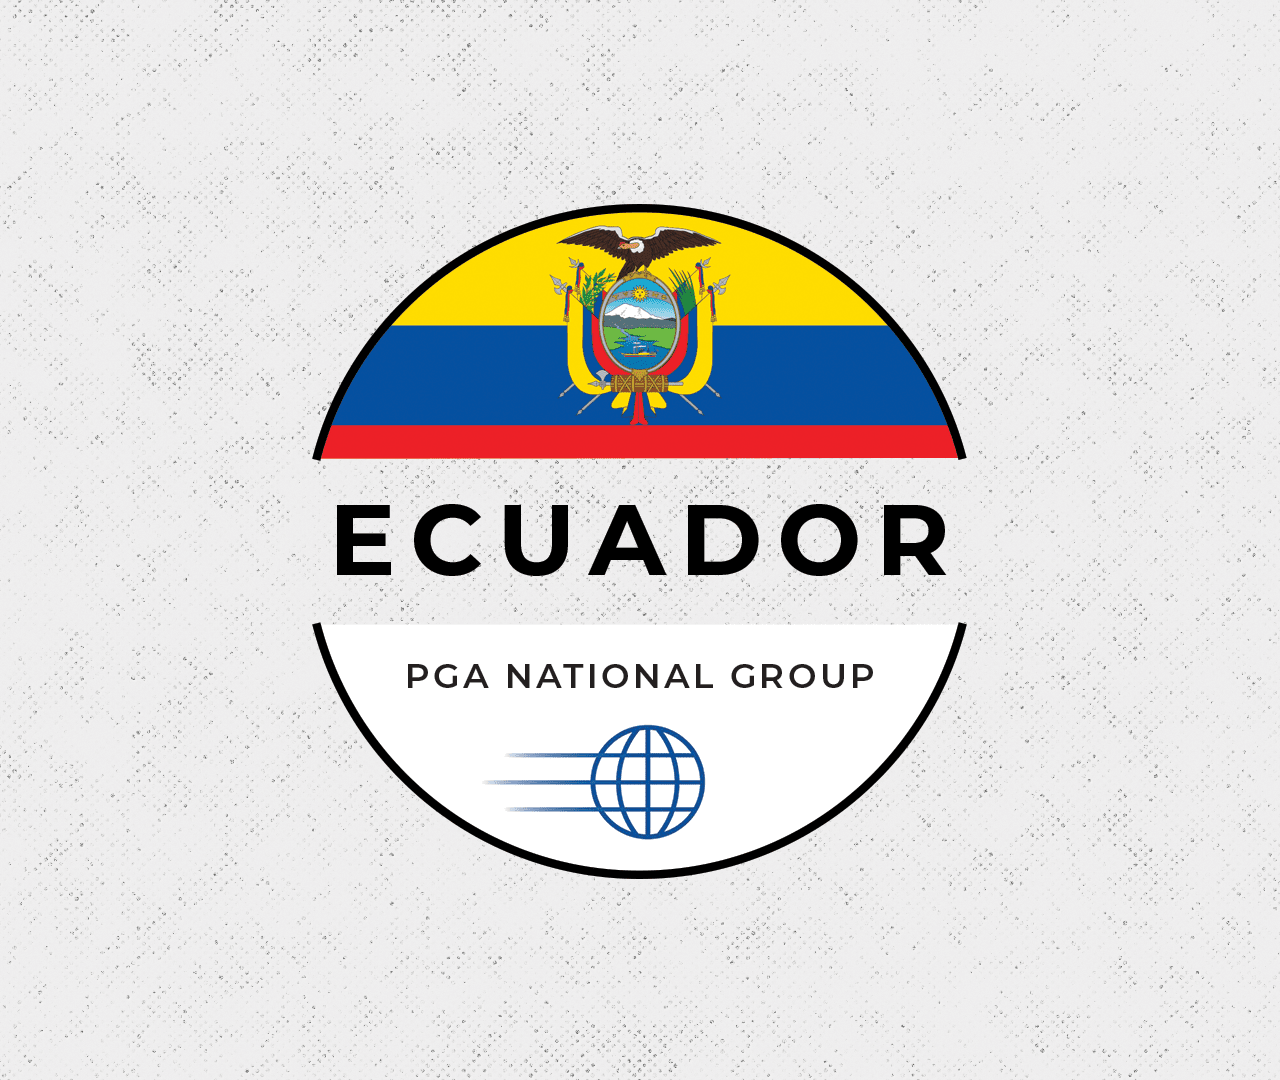 Ecuador National Group